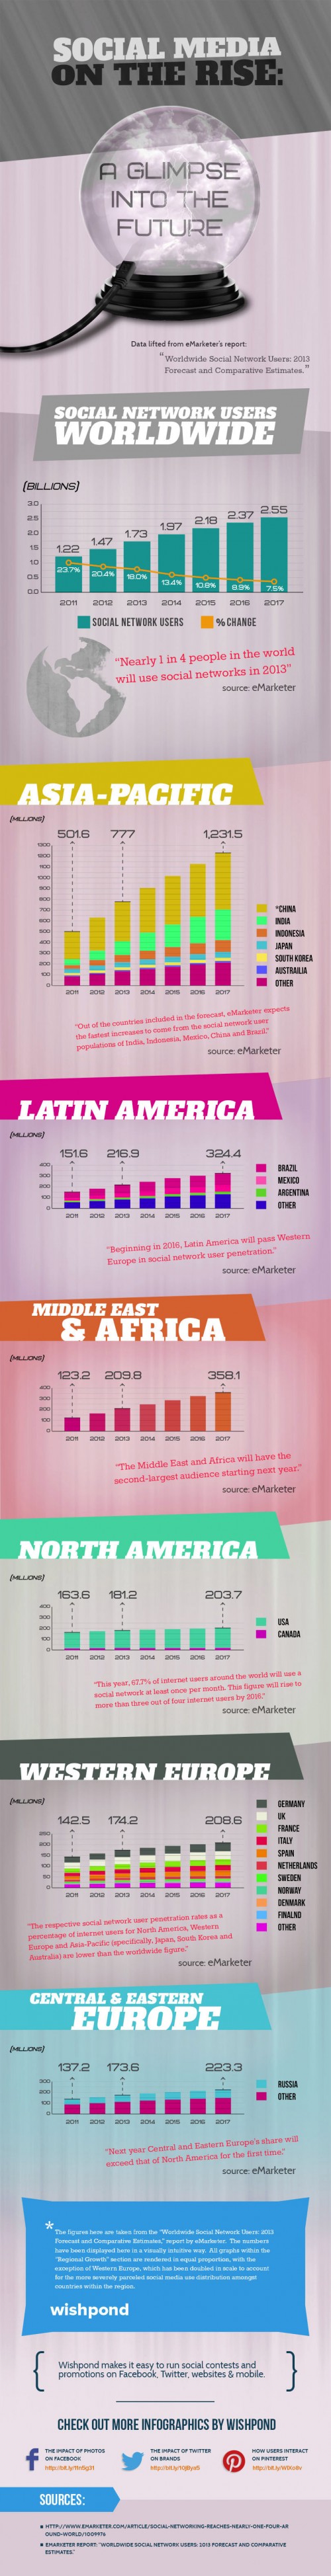 Global Trend: Social Media On The Rise (Infographic) - ViralBlog.com 